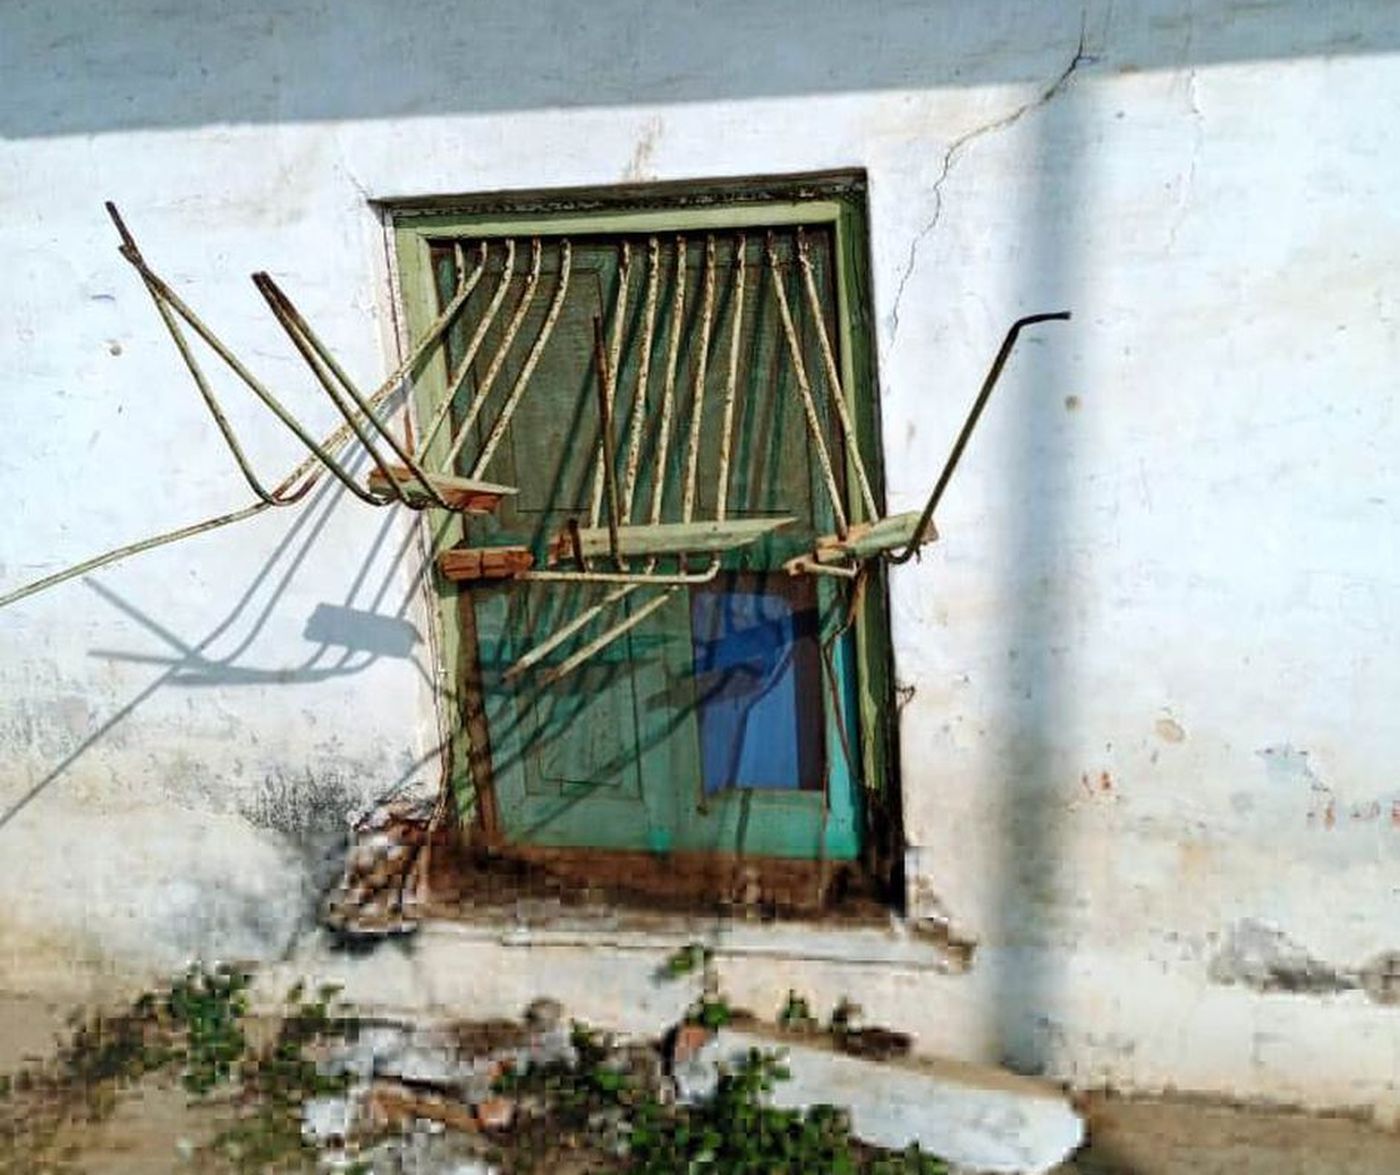 बाघपुरा में चोरों का आतंक, एक सप्ताह में 3 जगह पर माल पार